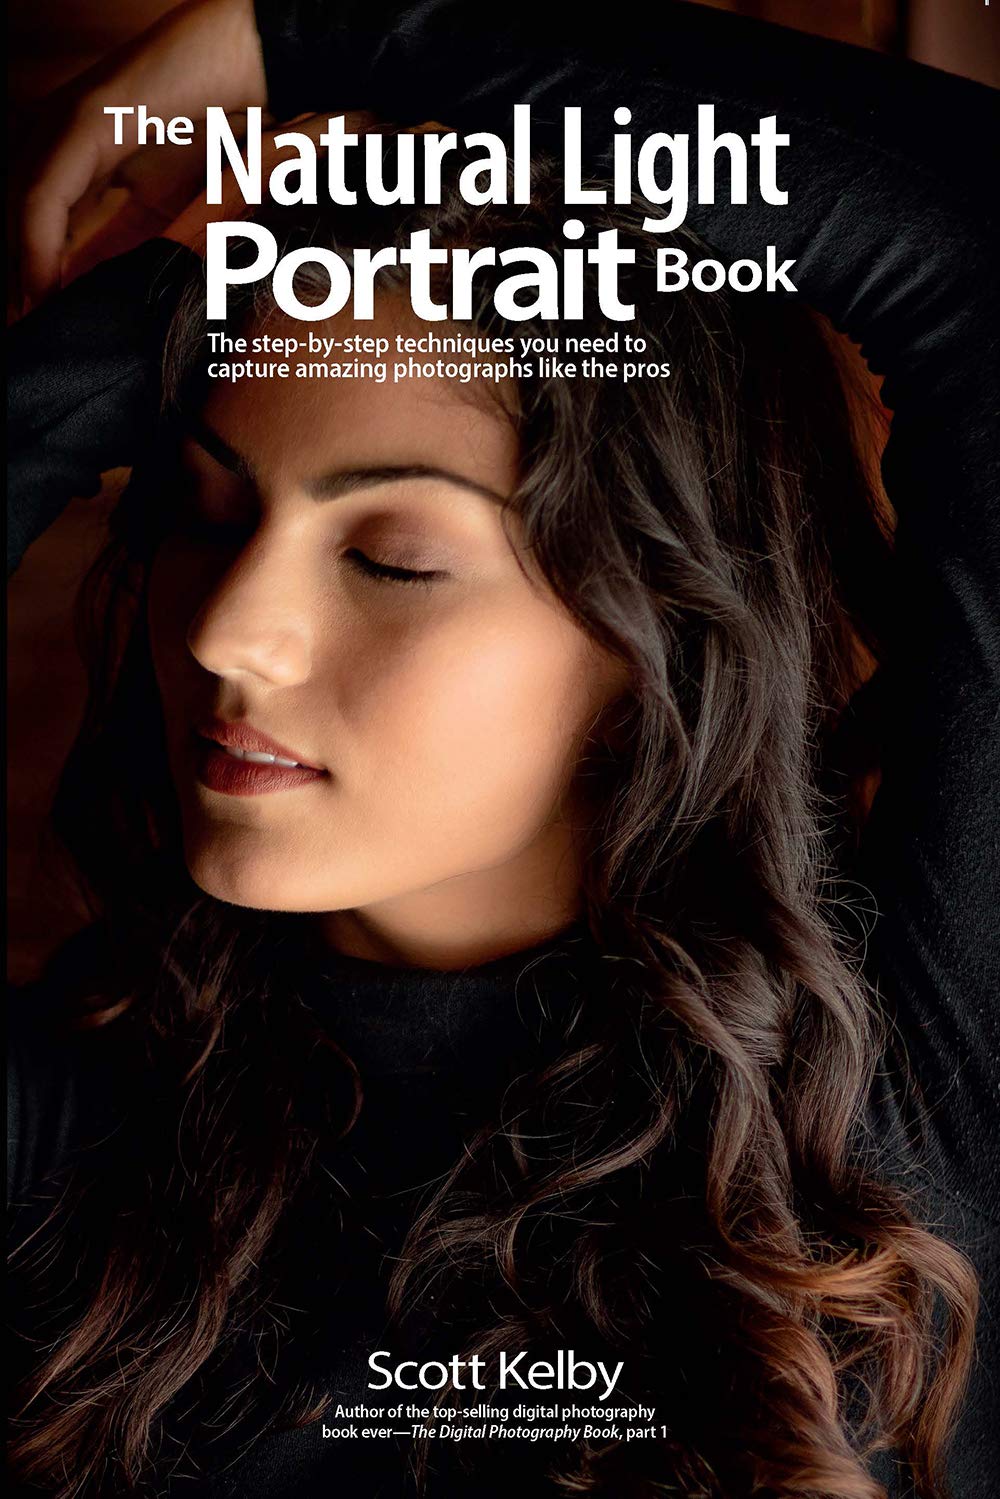 The Natural Light Portrait Book Scott Kelby - Best Portrait Photography Books